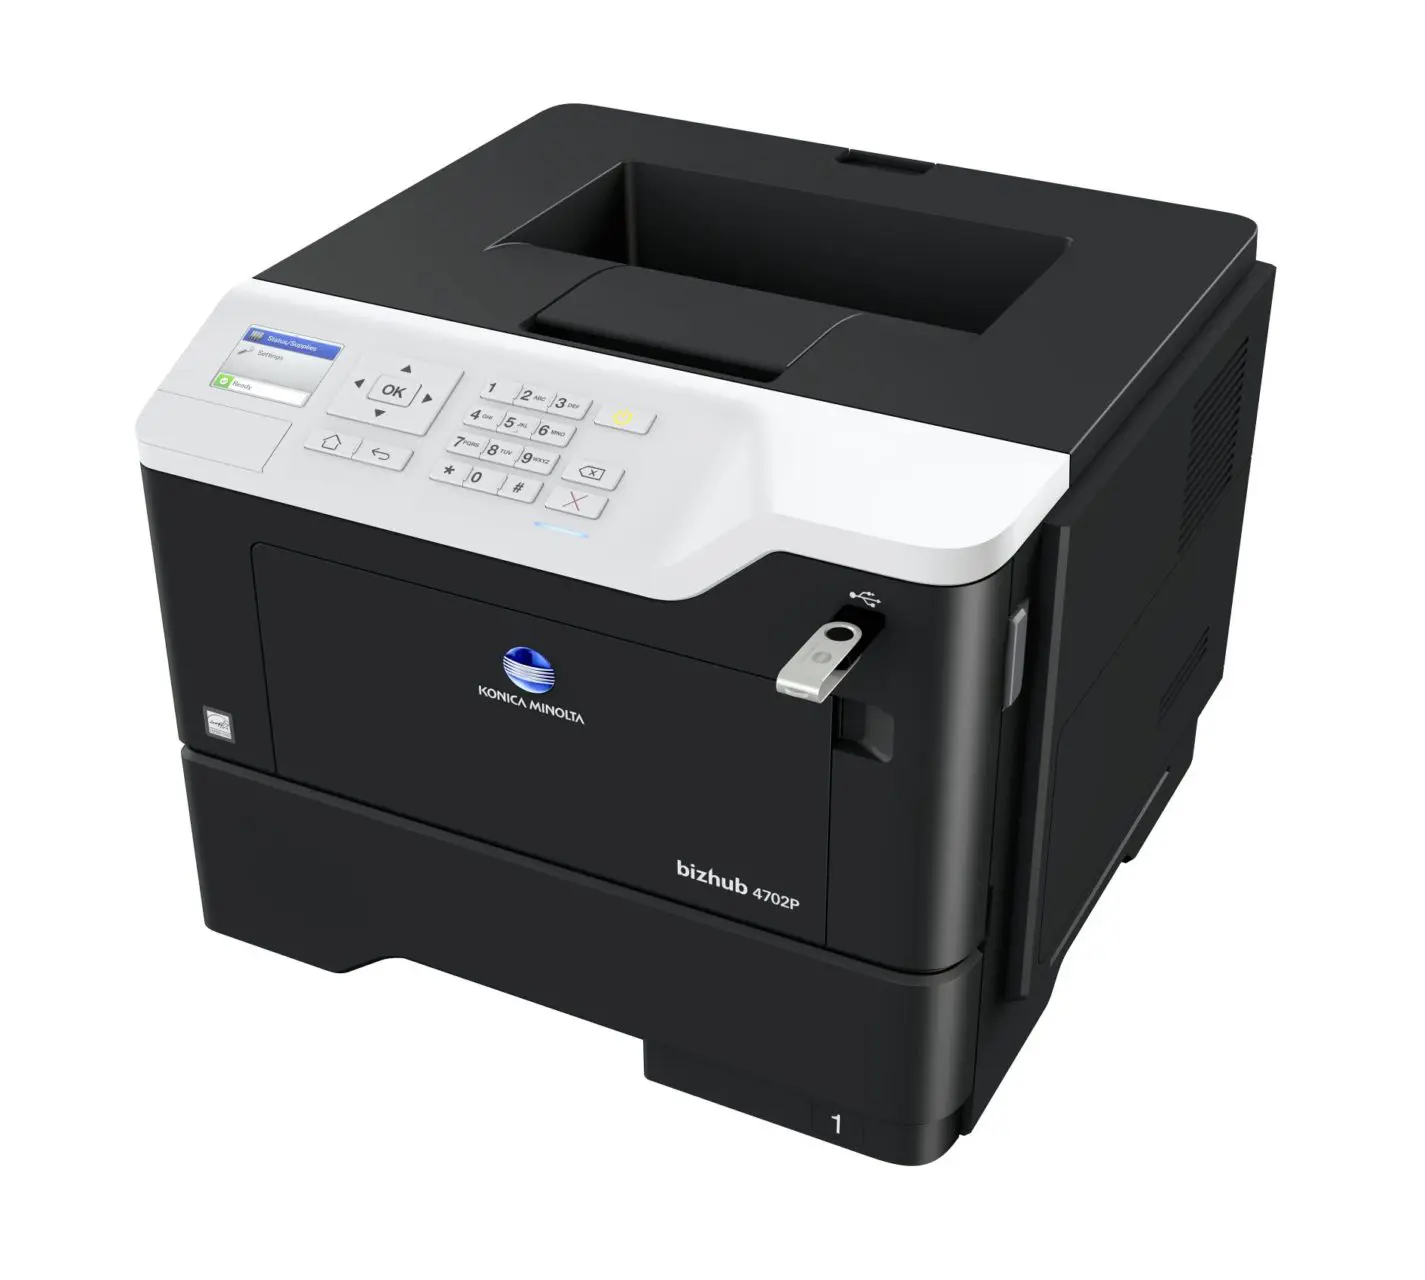 Photocopieur Bizhub 4702P USB